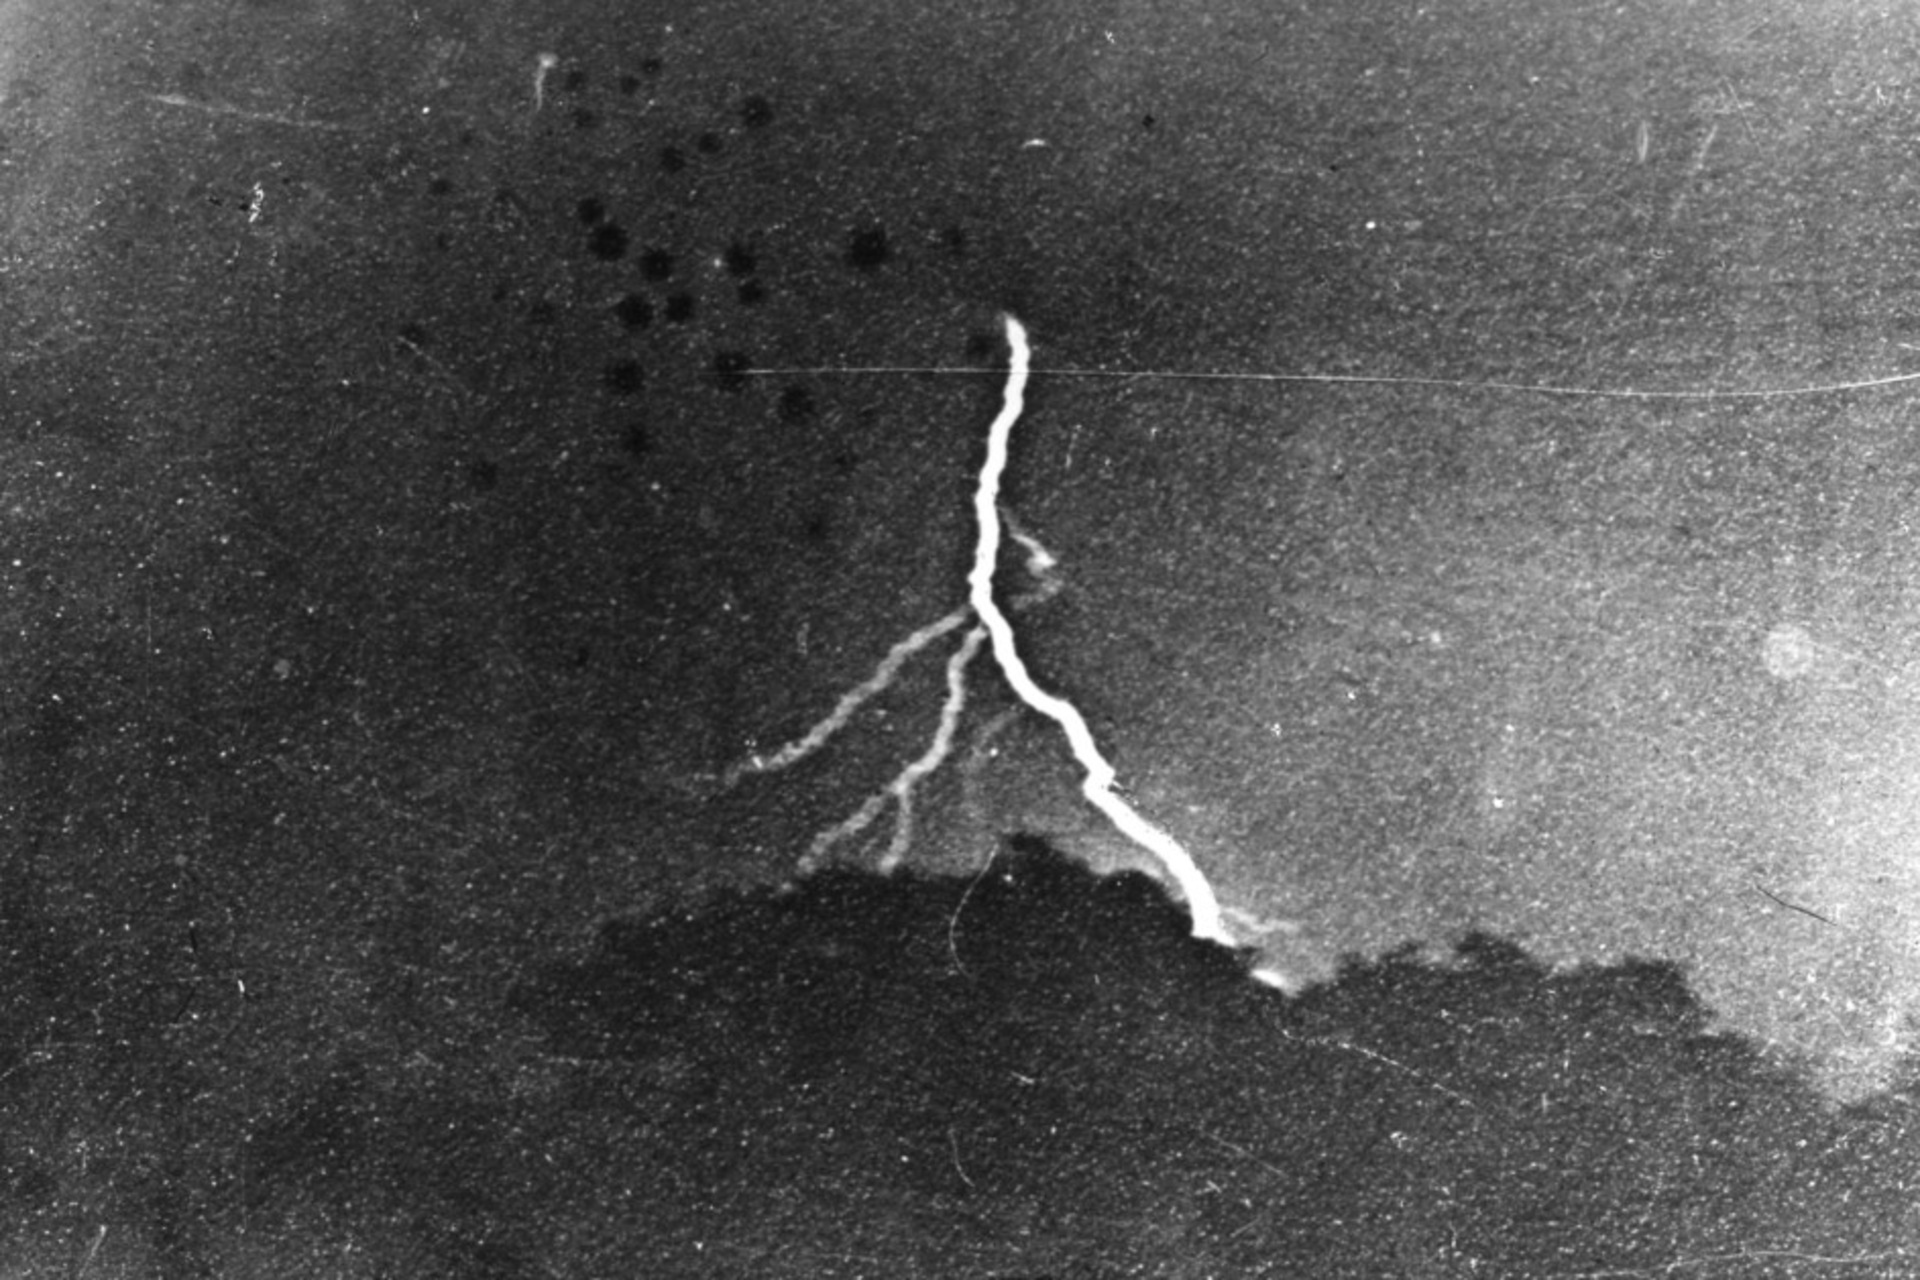 Relâmpago: A primeira fotografia de um raio, tirada por William Nicholson Jennings em 2 de setembro de 1882 na Filadélfia, e preservada como uma impressão de gelatina prateada no The Franklin Institute